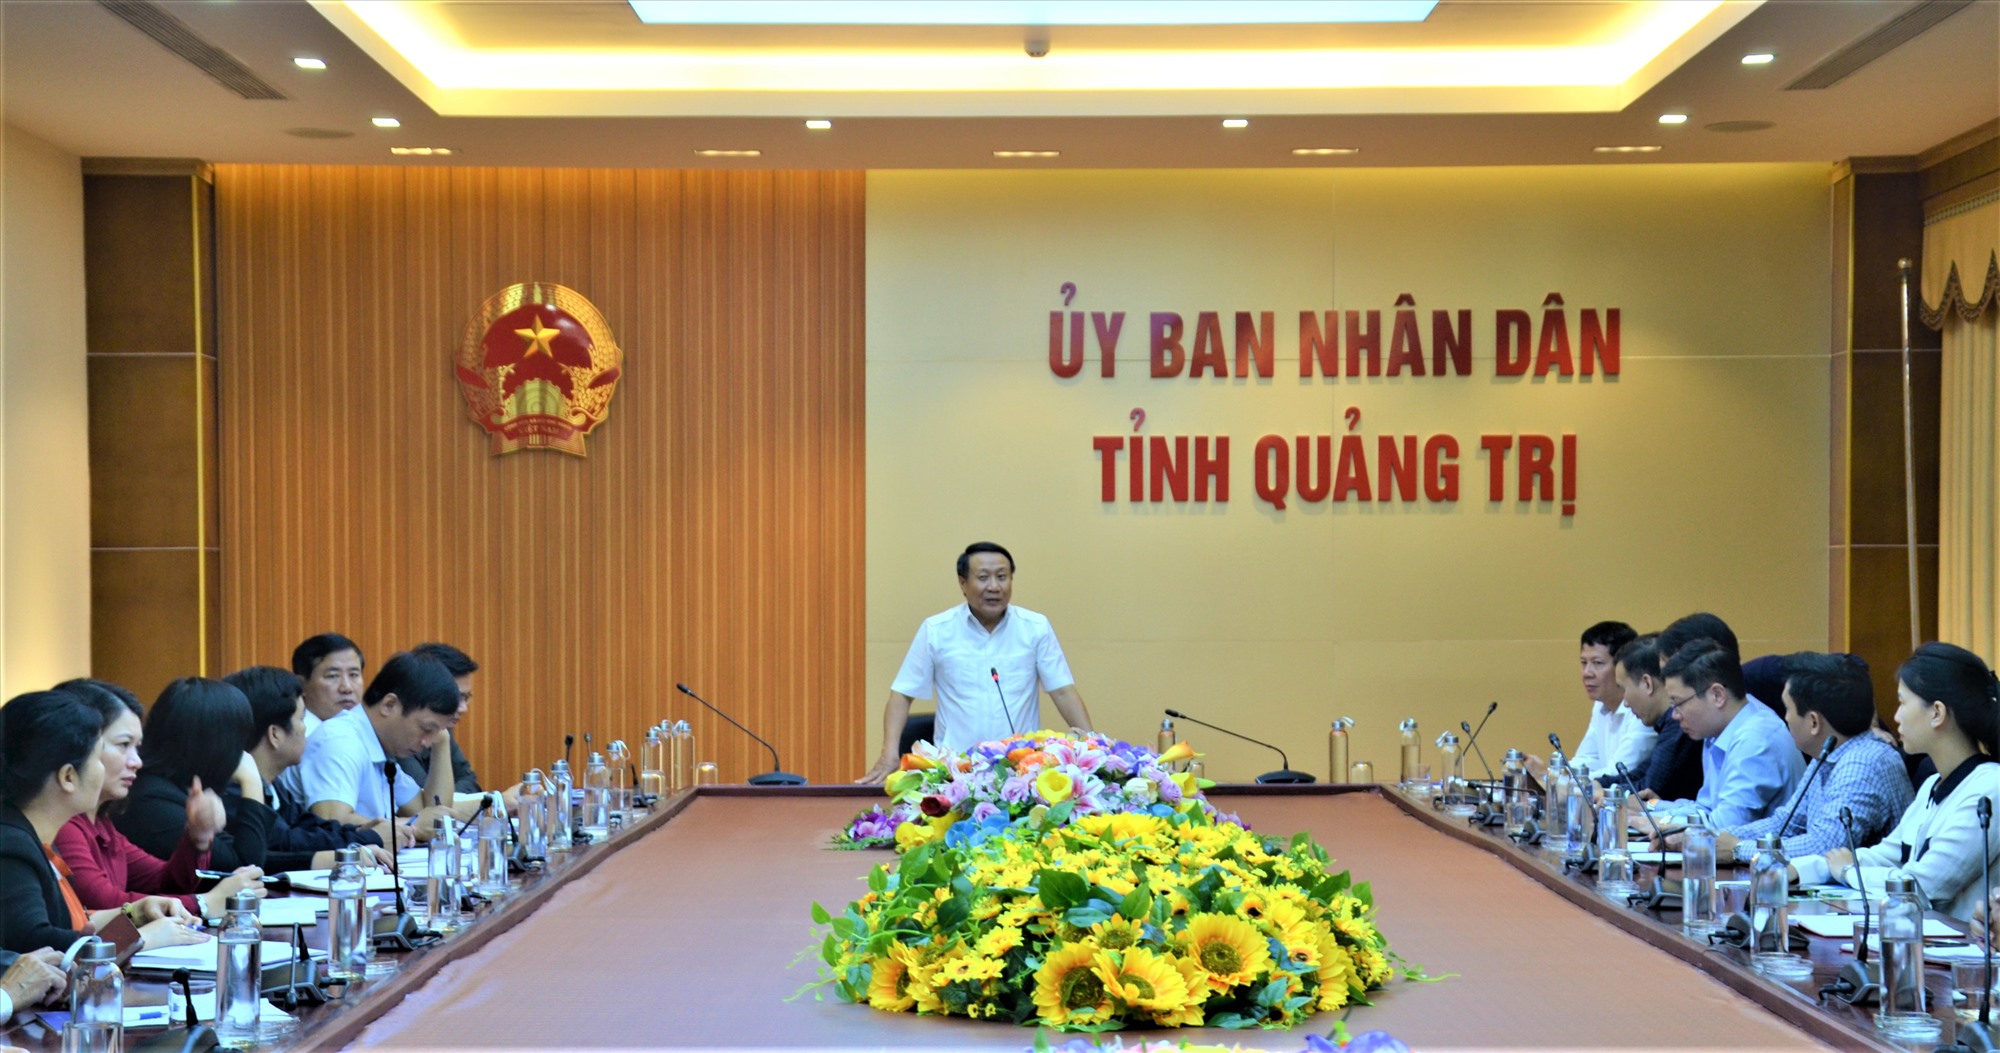 Phó Chủ tịch Thường trực UBND tỉnh Hà Sỹ Đồng phát biểu kết luận cuộc họp - Ảnh: An Phong